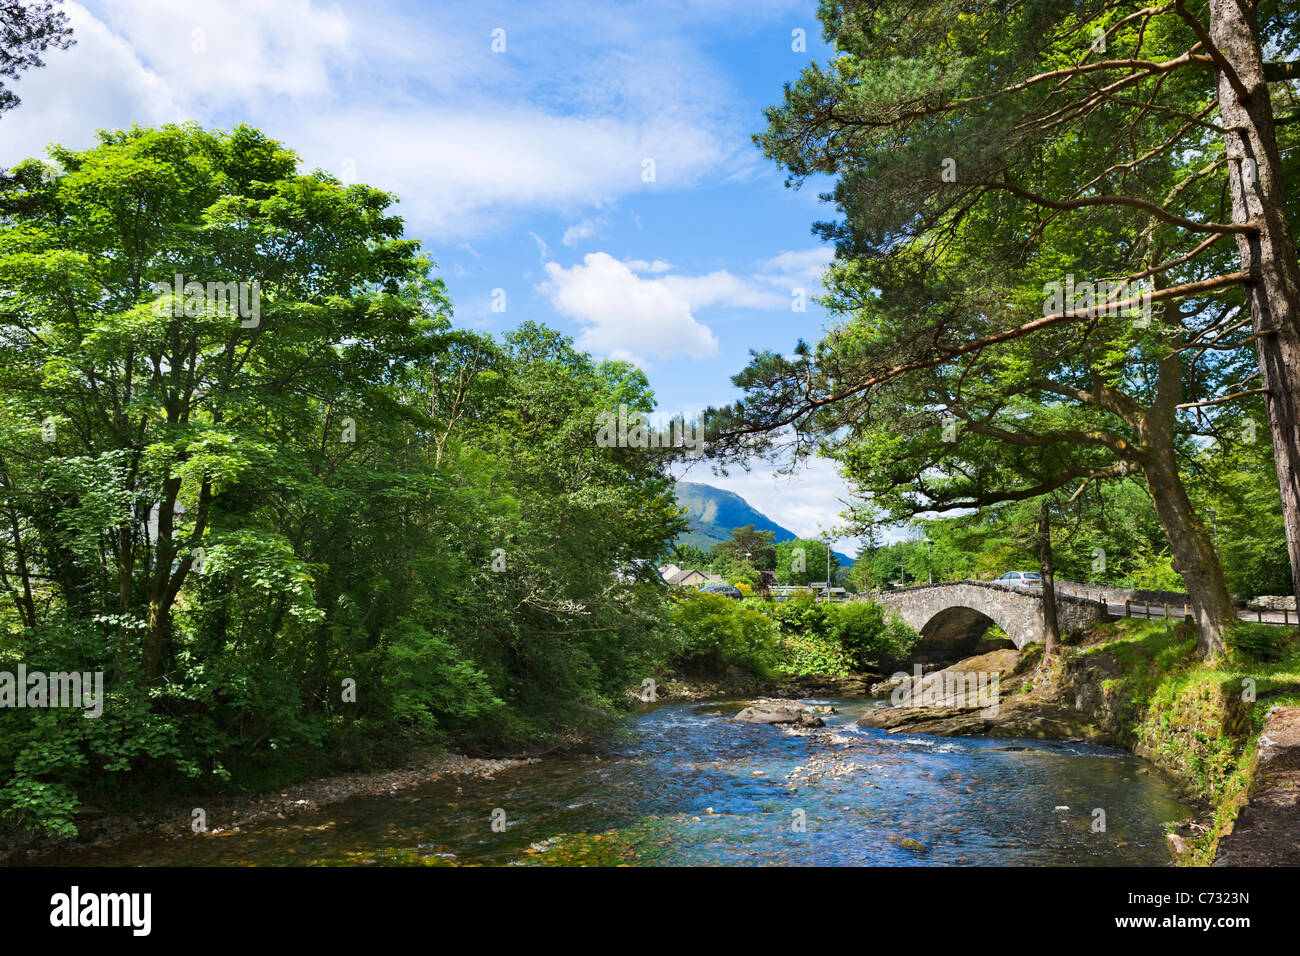 Bridge over the River Coe in the village of Glencoe, Glen Coe, Scottish Highlands, Scotland, UK Stock Photo